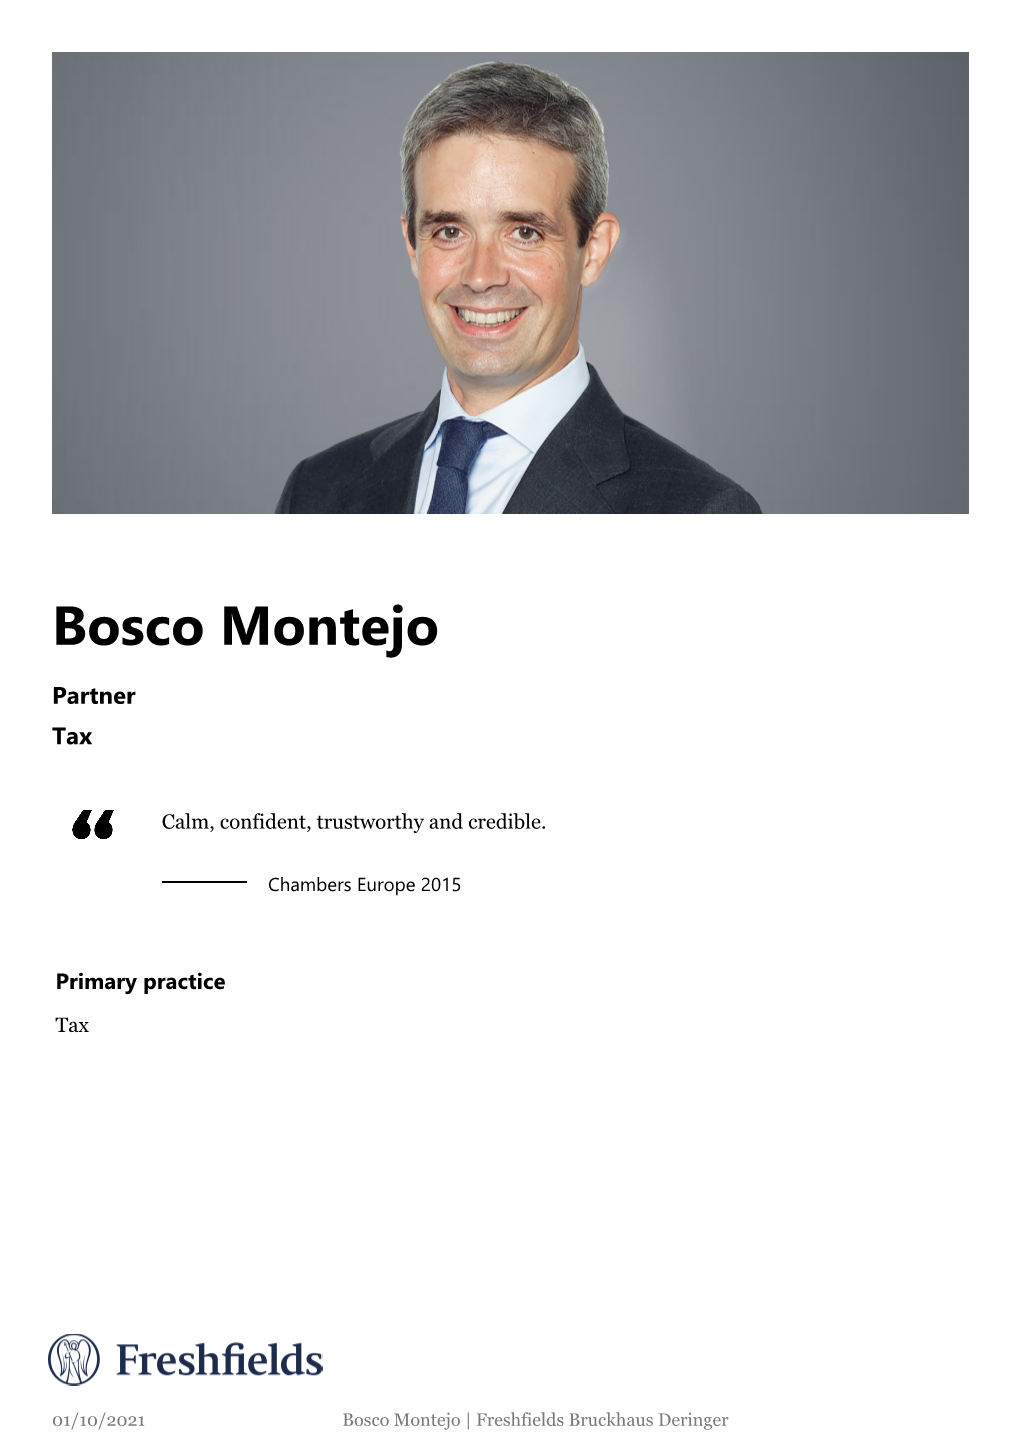 Bosco Montejo